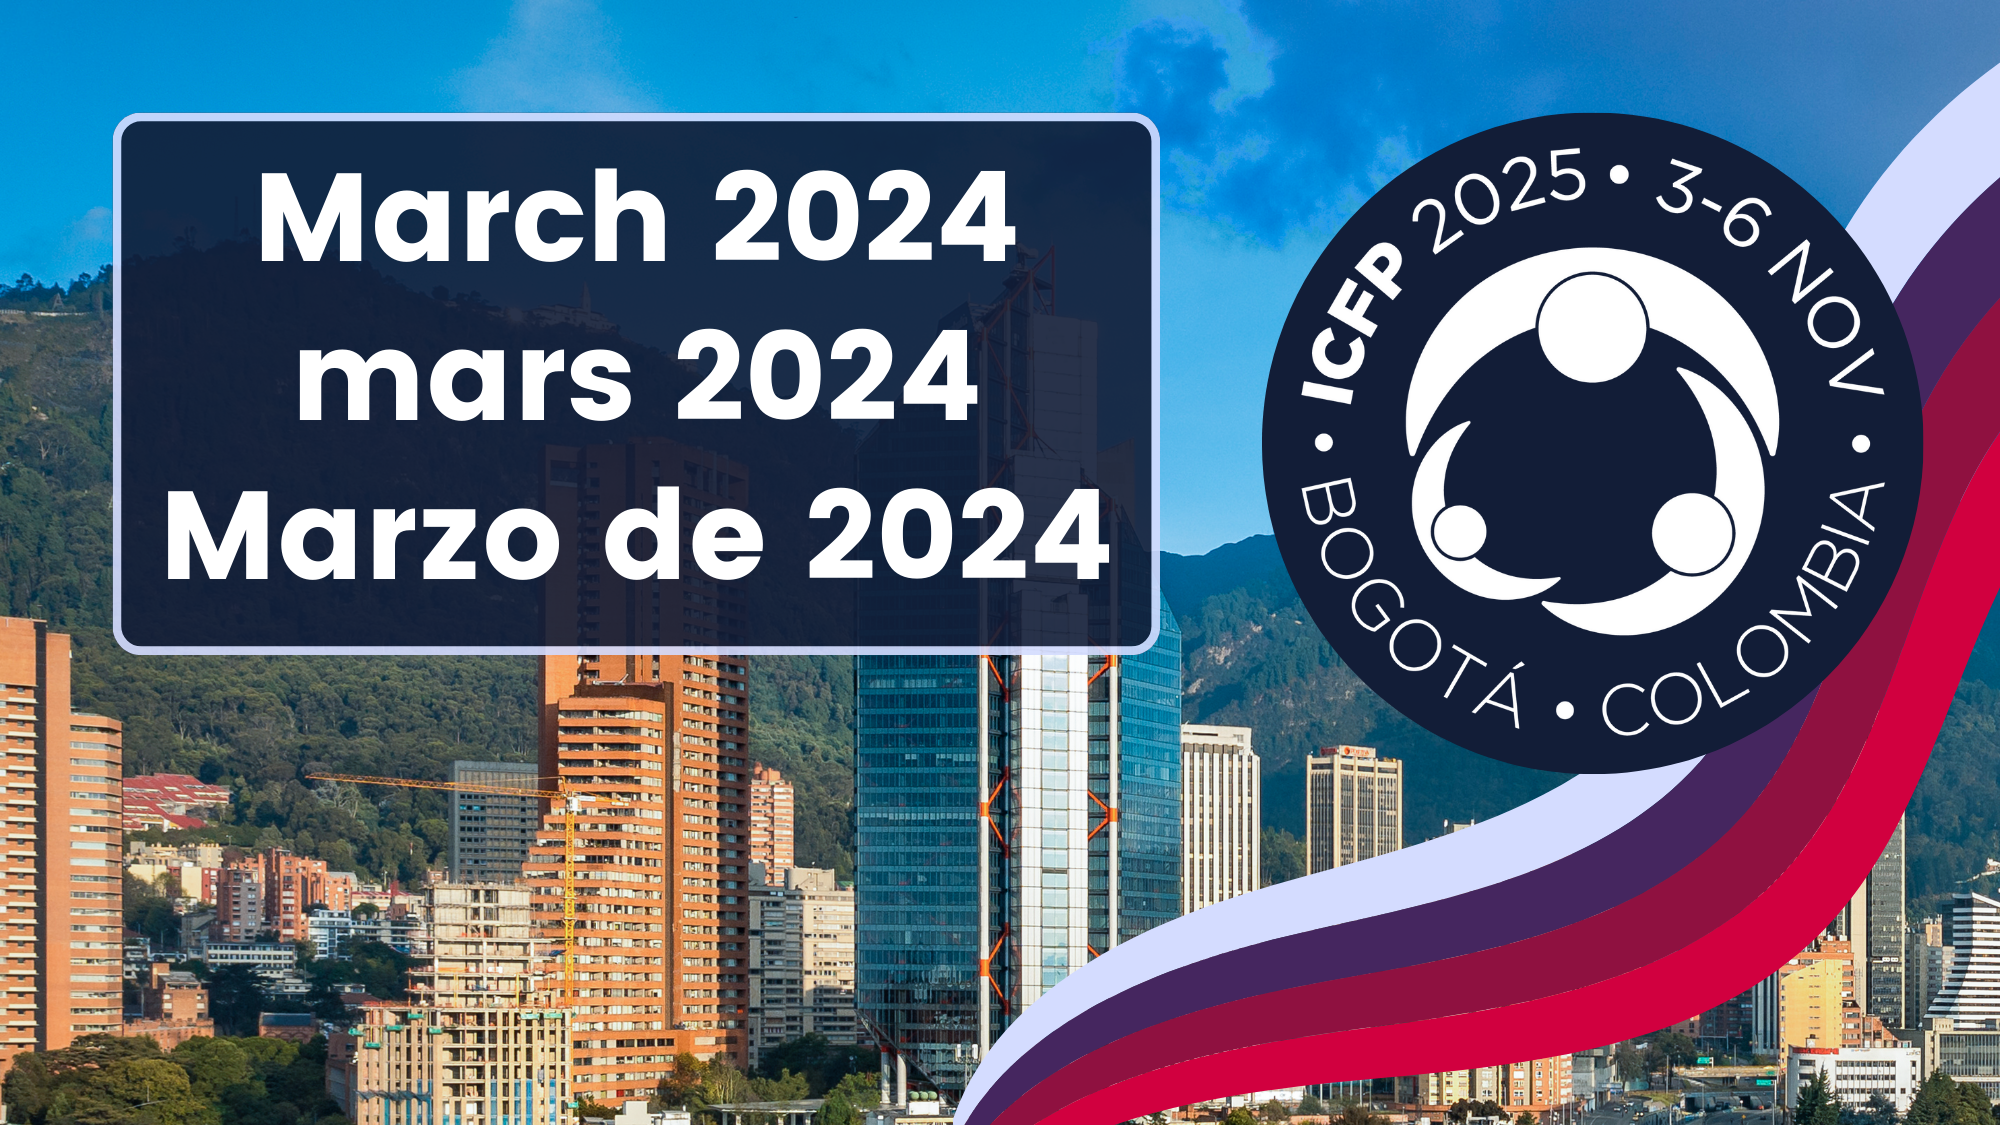 Reunión del ISC de la ICFP 2025: Marzo 2024